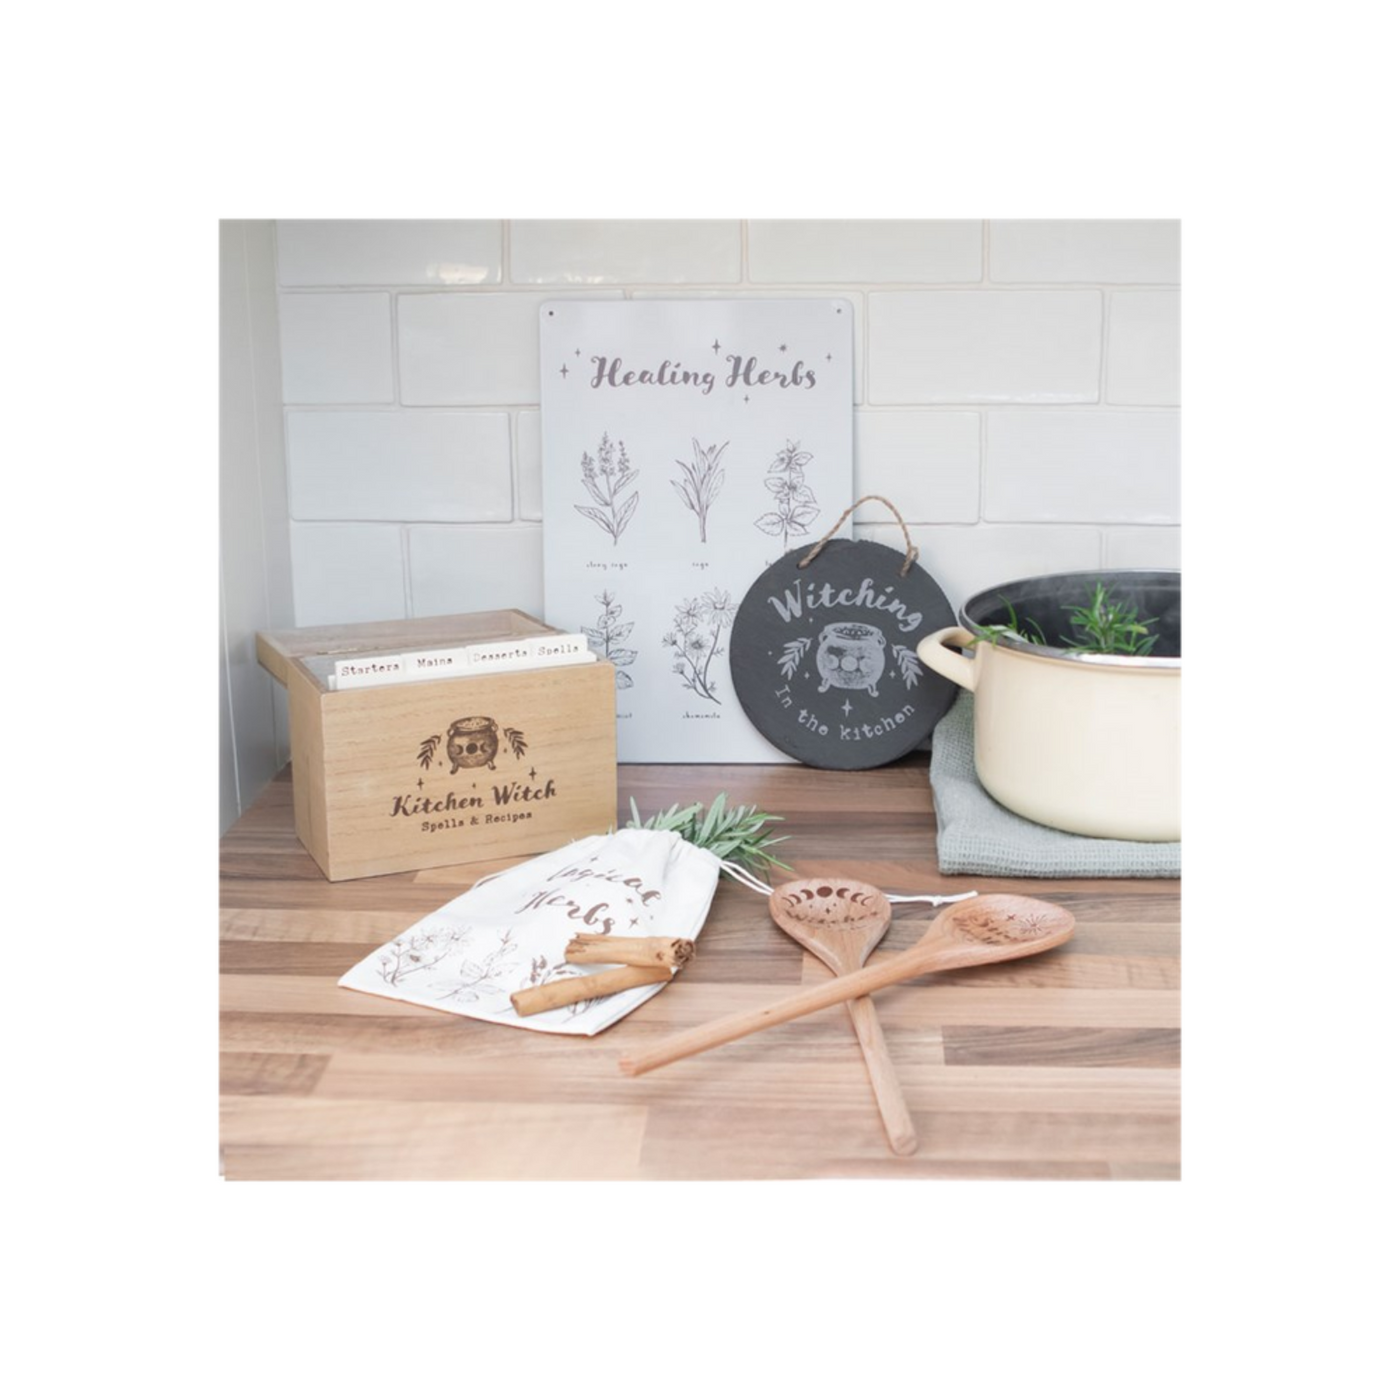 Kitchen Witch Wooden Recipe Box.